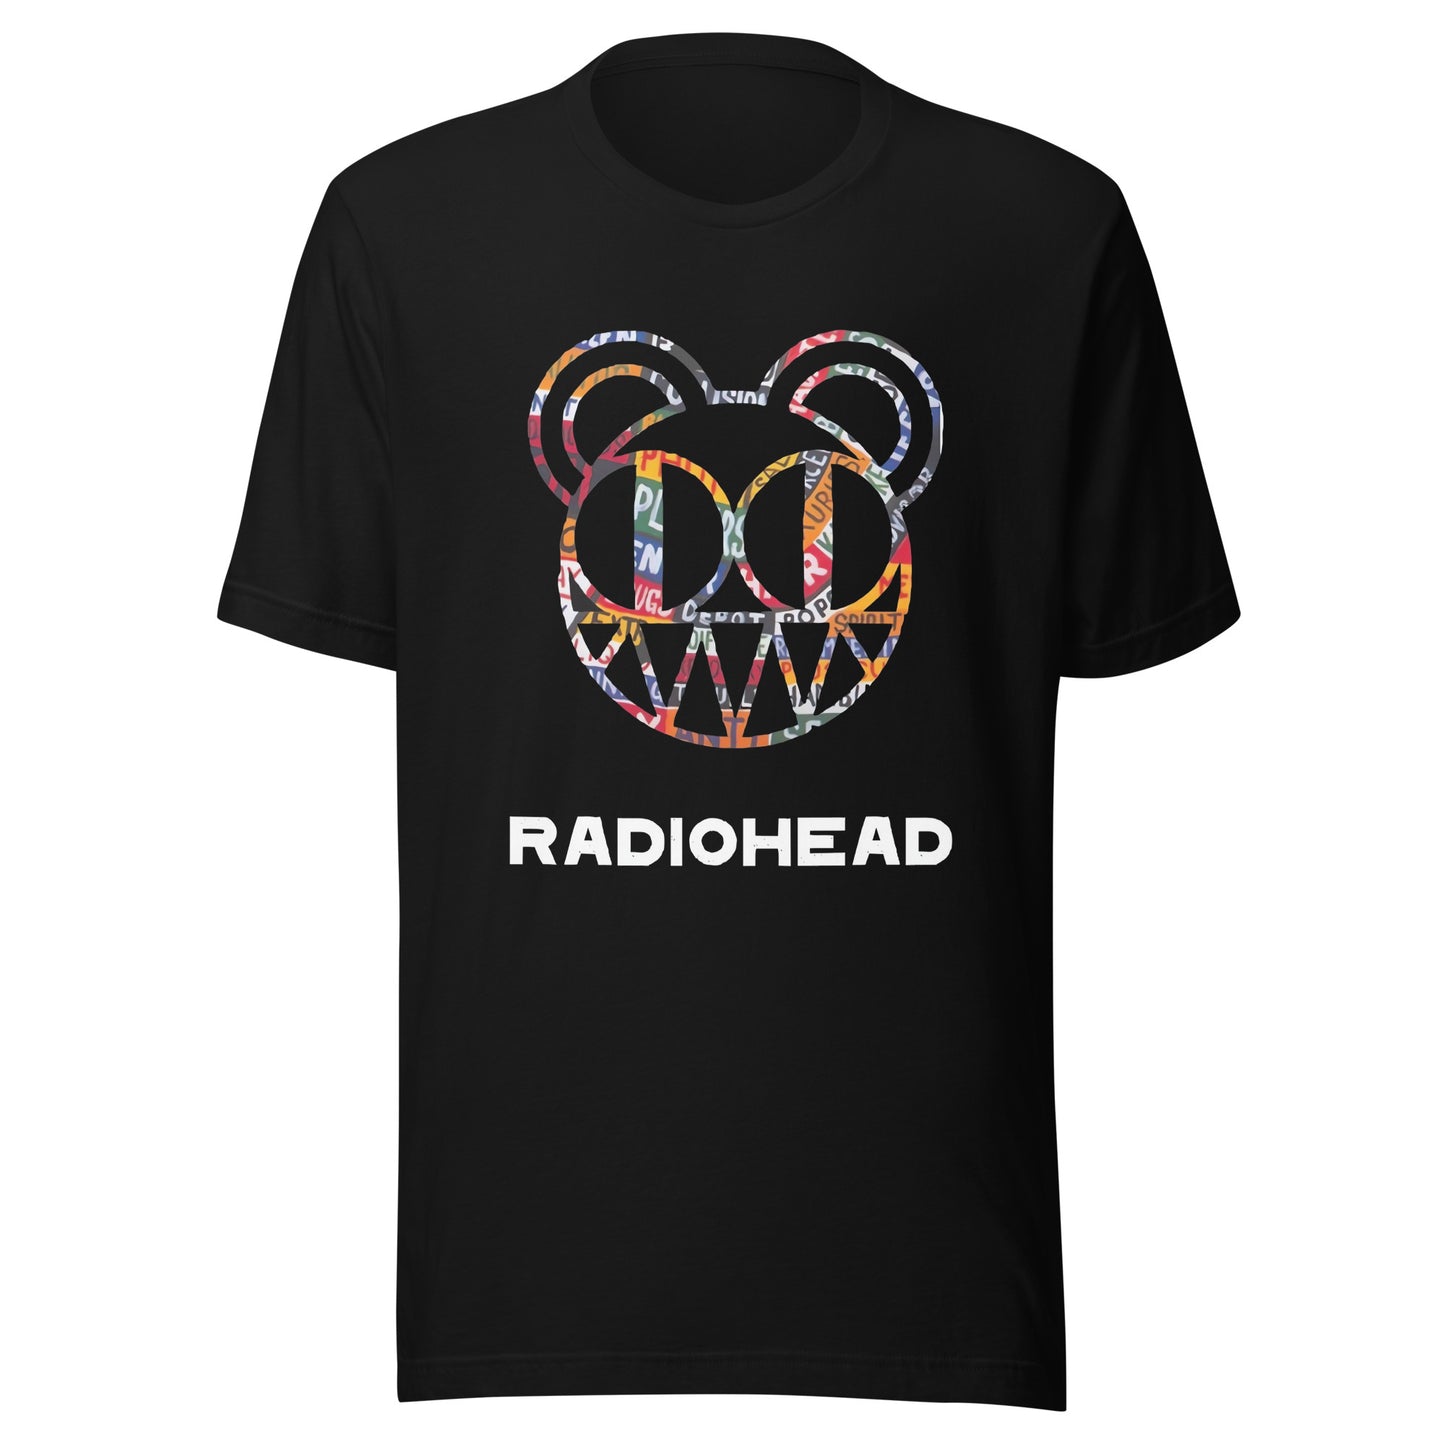 Camiseta Radiohead Colors, nuestras opciones de playeras son Unisex. disponible en Superstar. Compra y envíos internacionales.